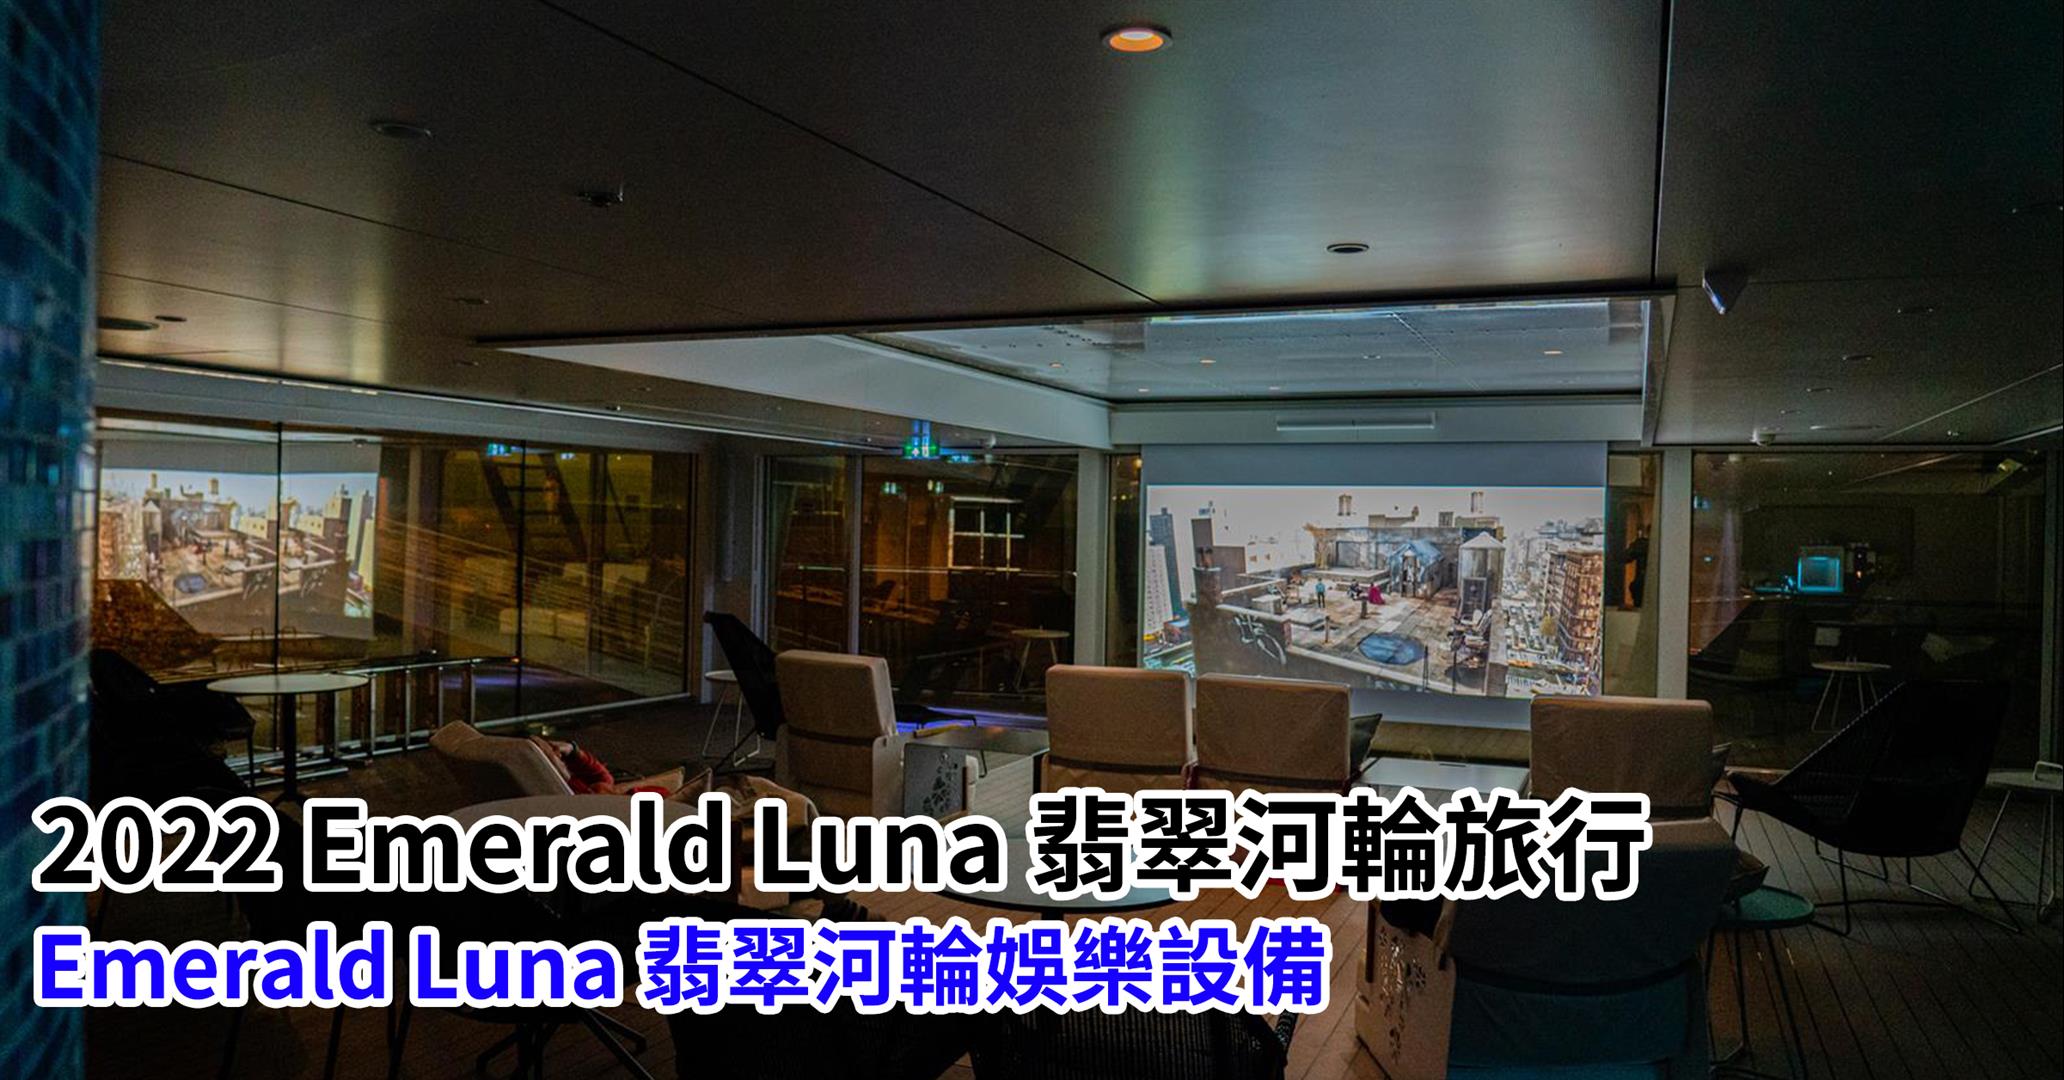 [2022 Emerald Luna 翡翠河輪旅行] 河輪旅行方式介紹、行程、餐點、特色